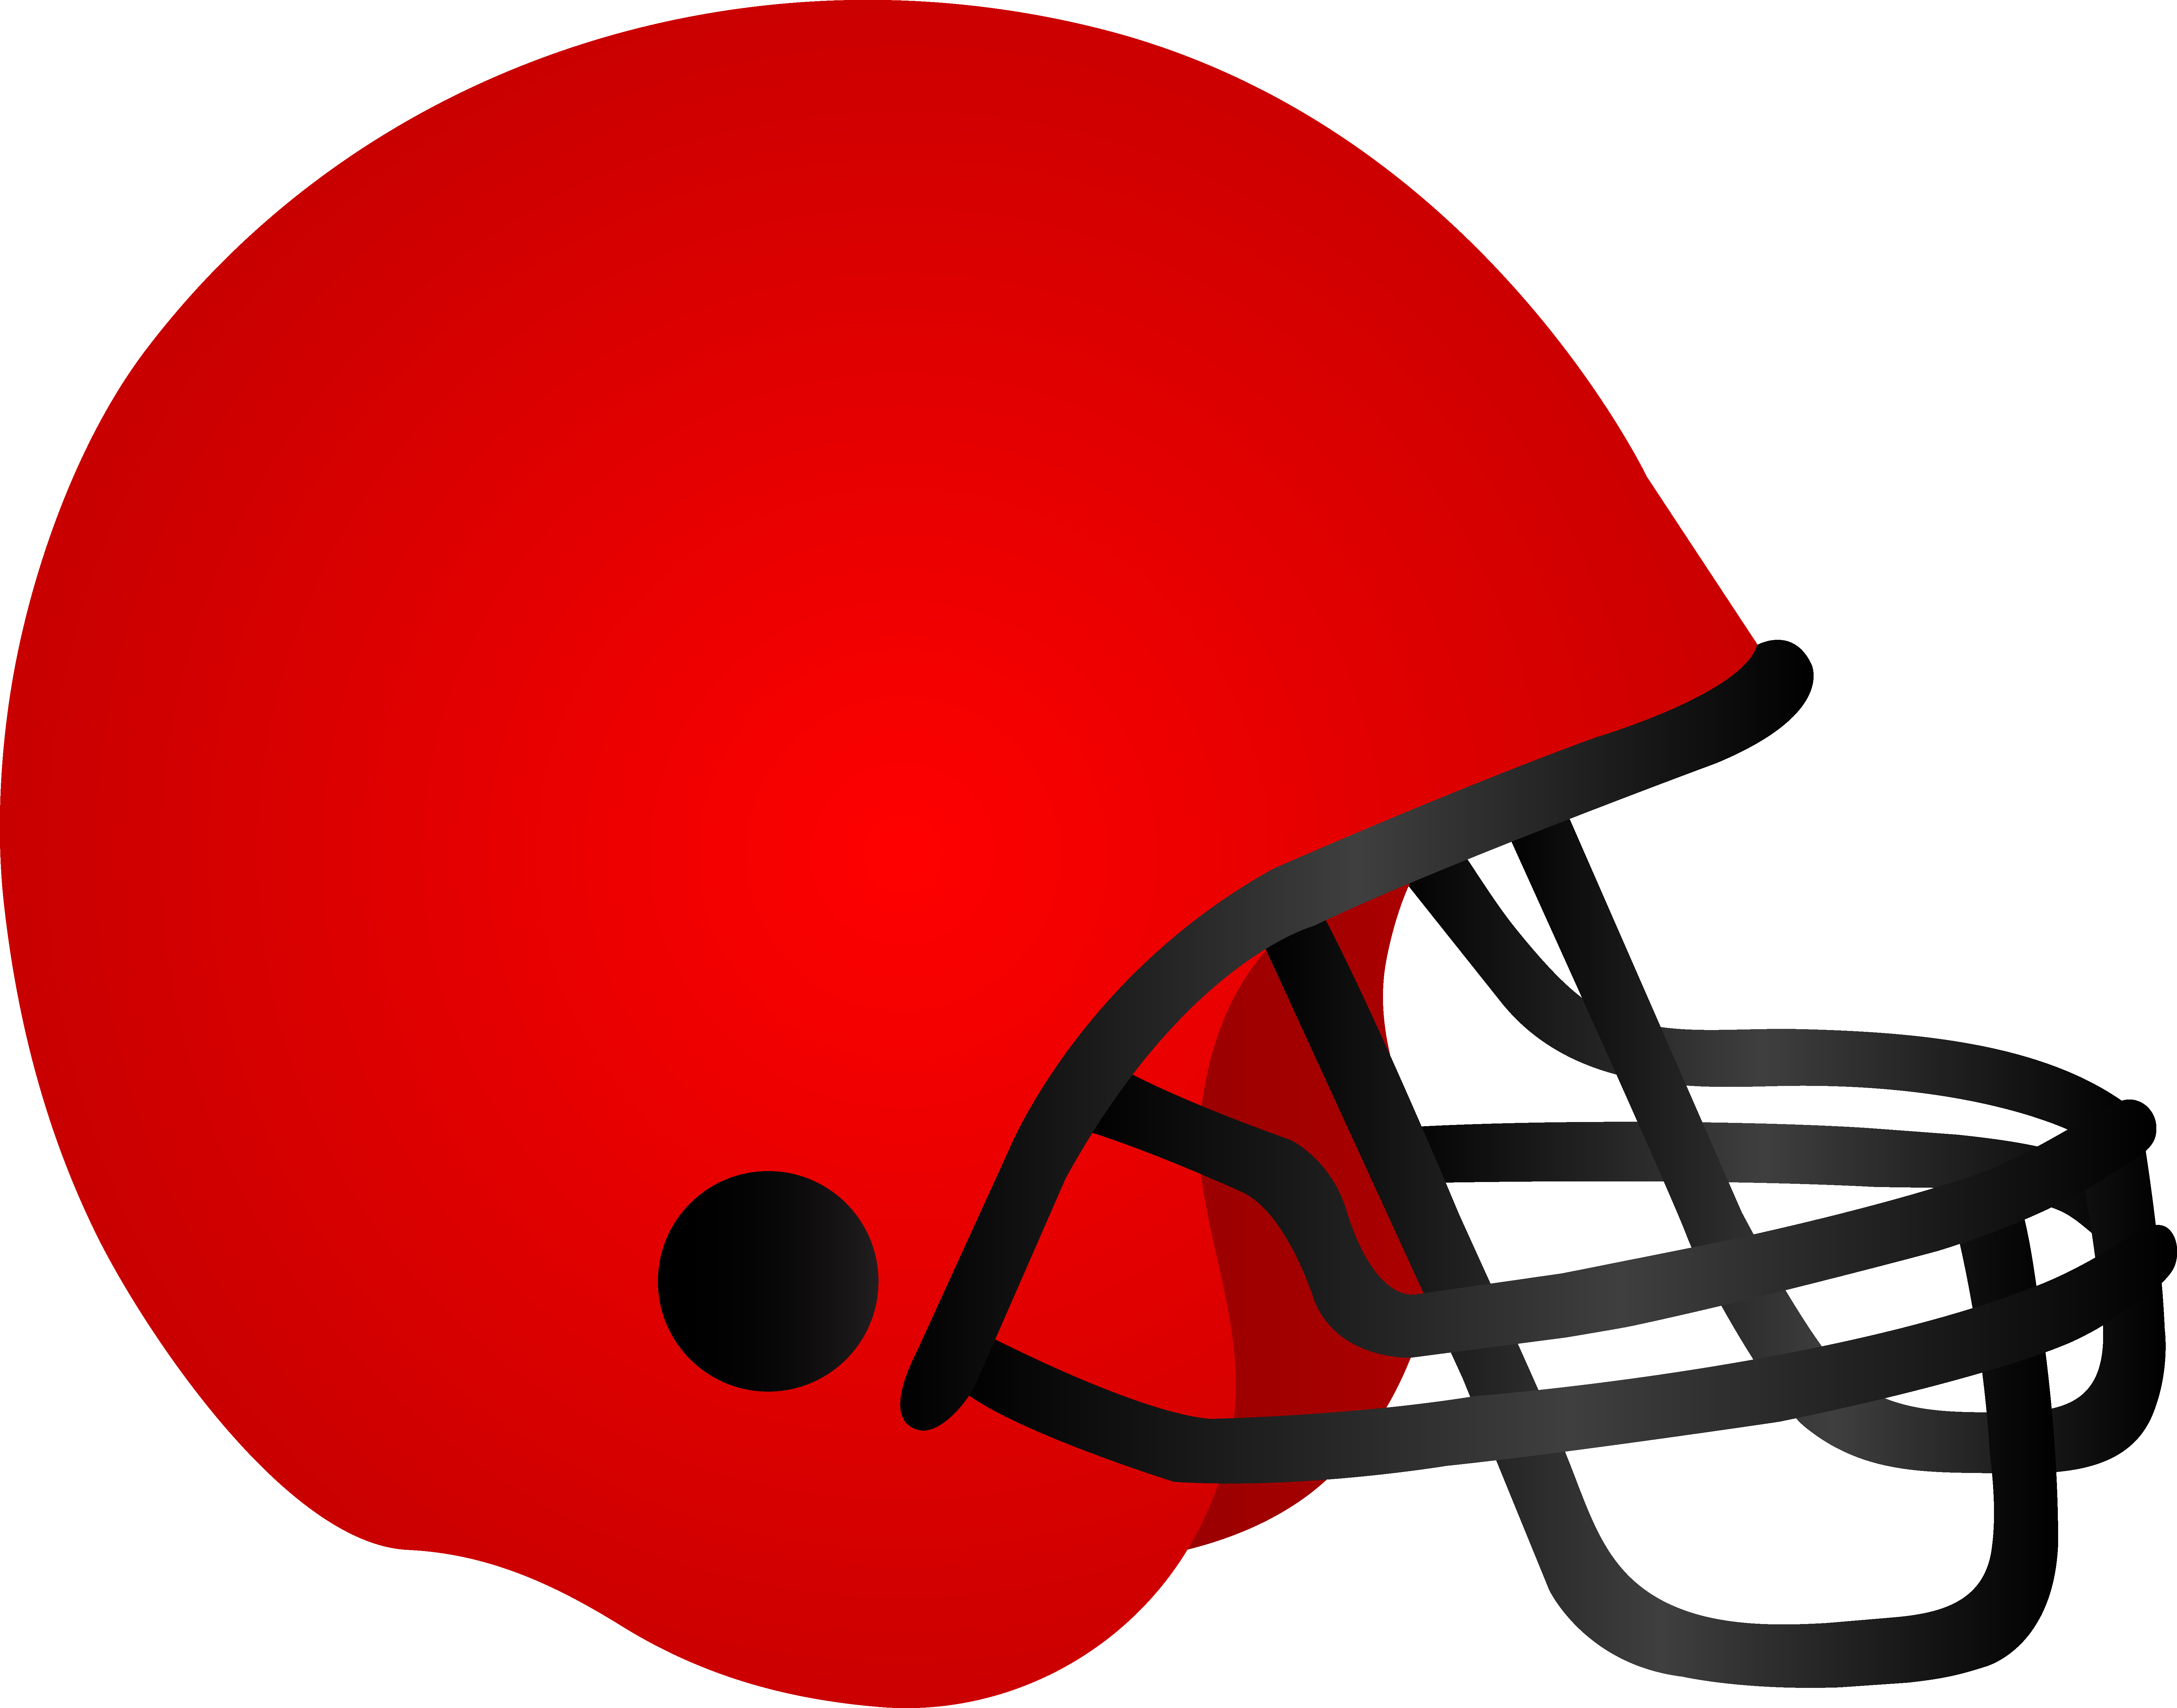 Football Helmet Clipart | Free Download Clip Art | Free Clip Art ...